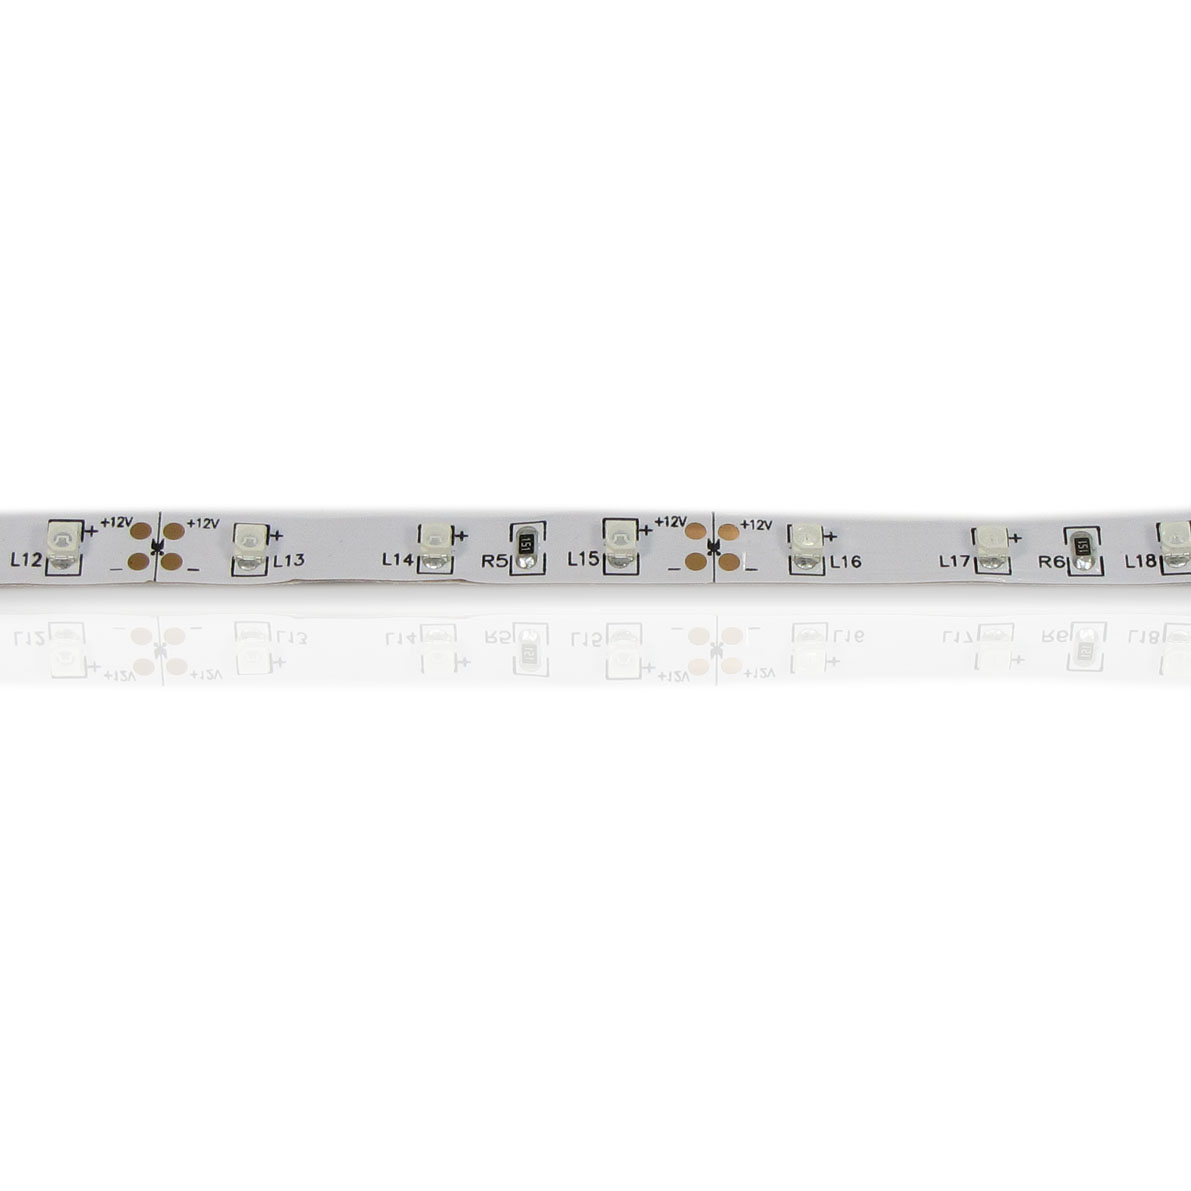 светодиодная лента standart pro class, 3528, 60 led/m, green, 12v, ip33, артикул 26949